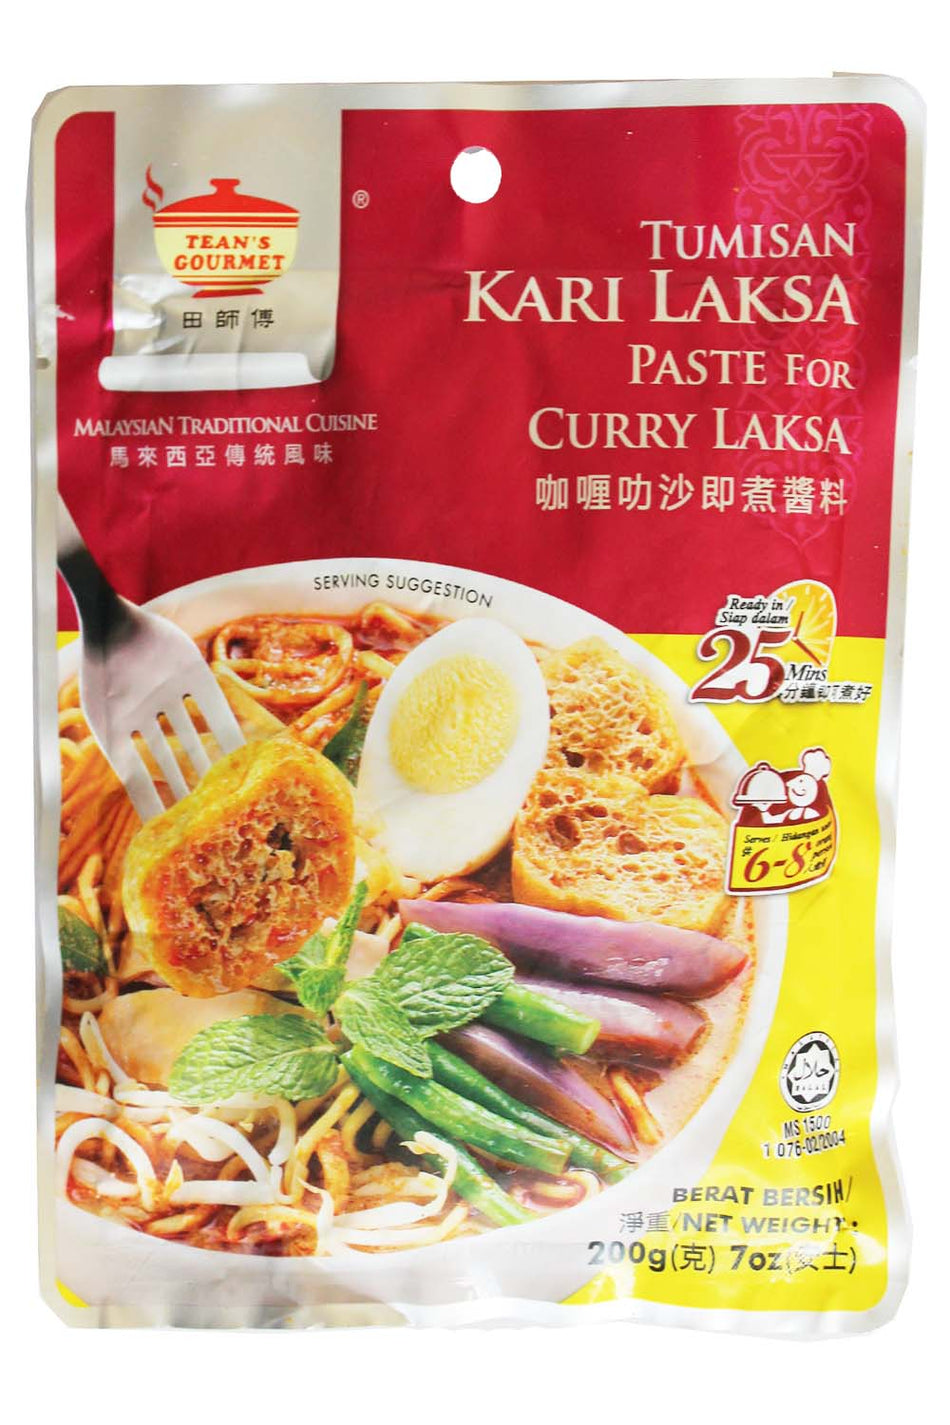 Tean Gourment Malaysian Tumisan Kari Laksa paste for Curry Laksa